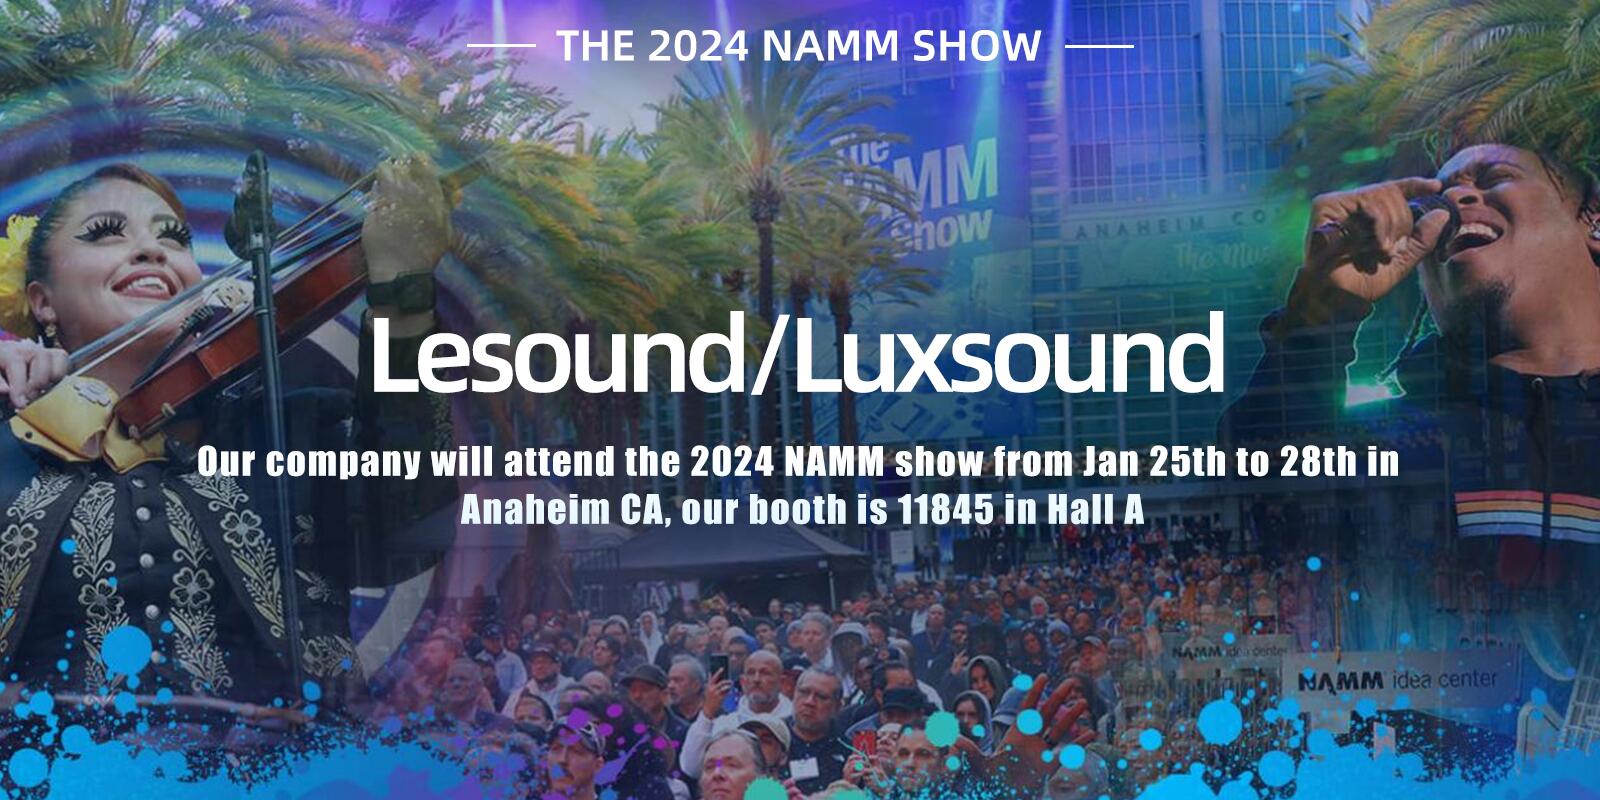 Lesound/Luxsound parteciperà al NAMM Show 2024 dal 25 al 28 gennaio ad Anaheim, California